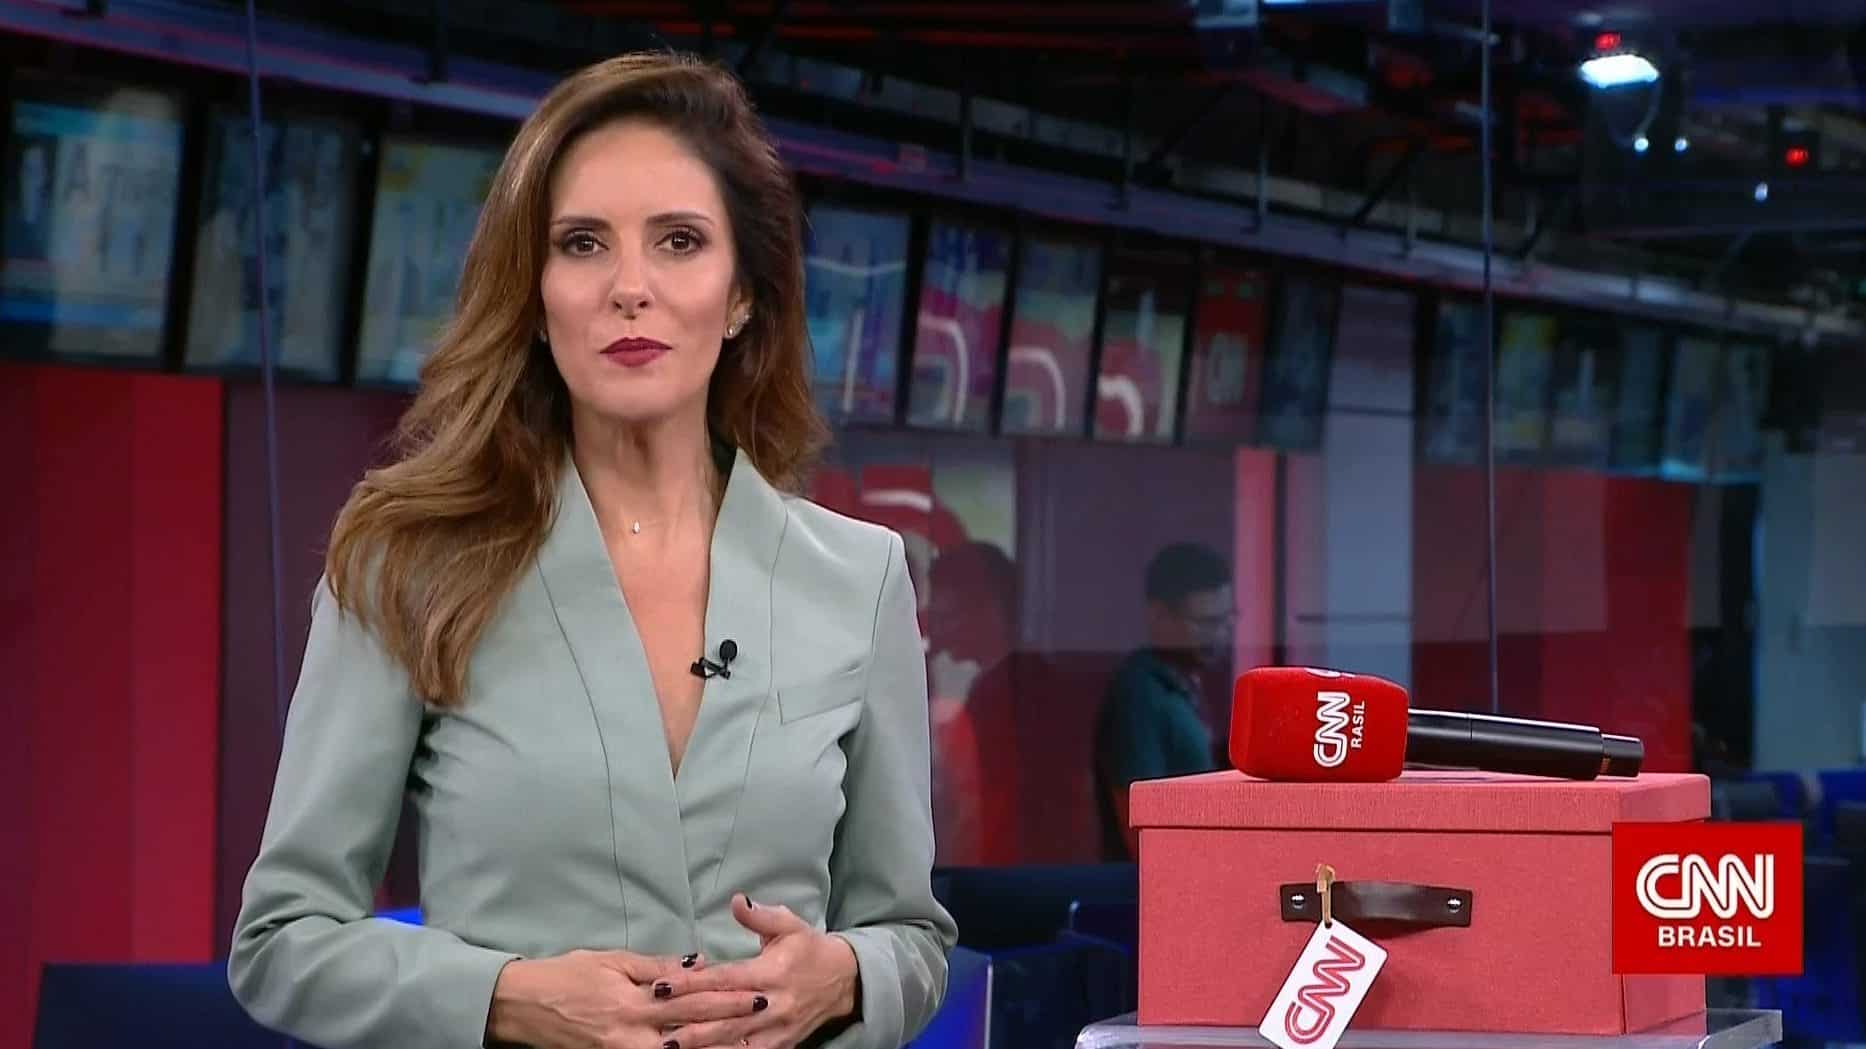 Na CNN Brasil, Monalisa Perrone vira alvo da web após gafe ao vivo